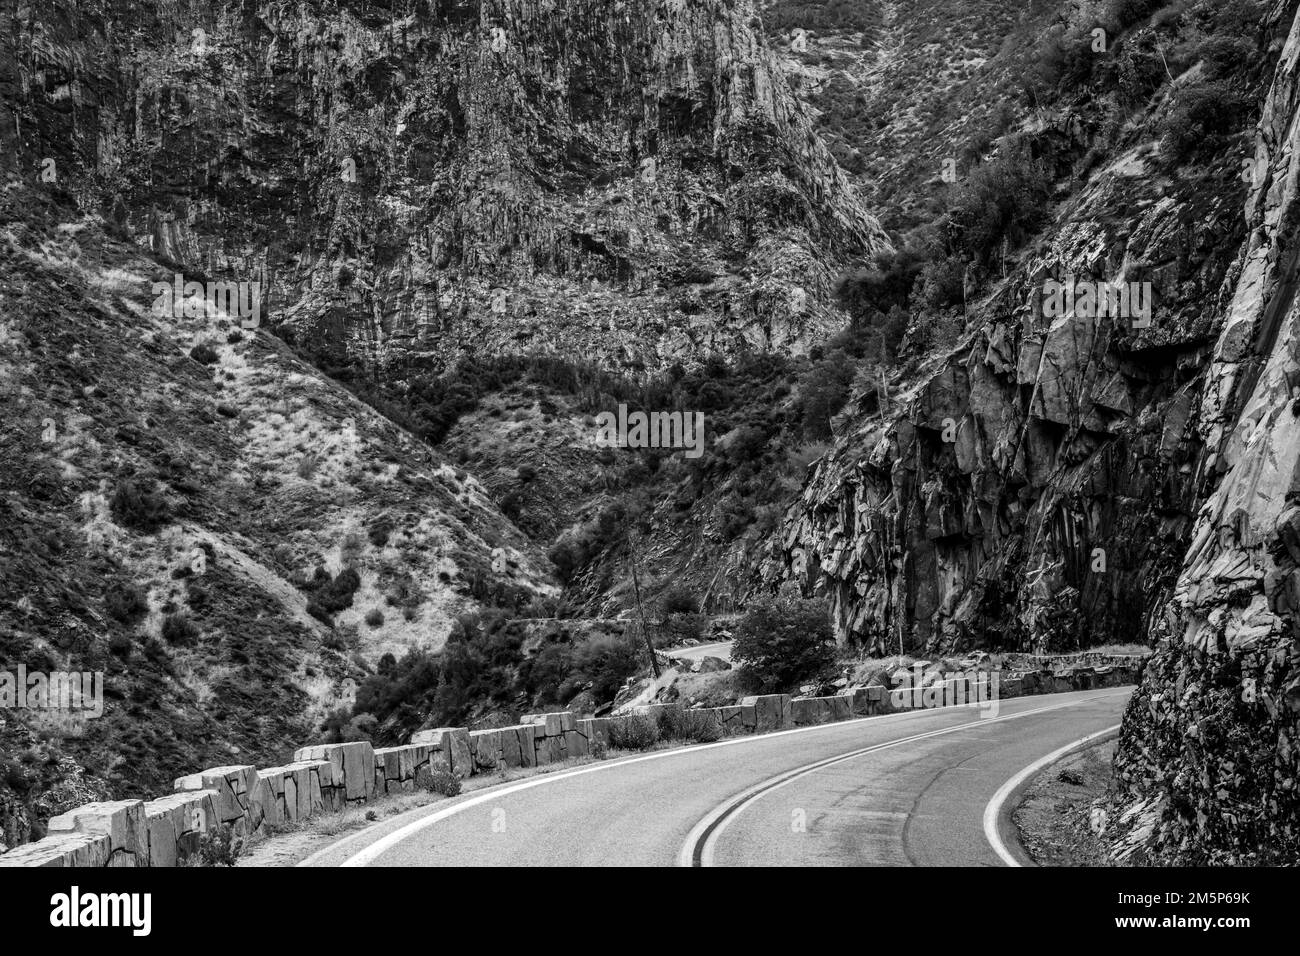 La strada curva avanti e indietro attraverso ripide pareti della Kings Canyon Scenic Highway Foto Stock